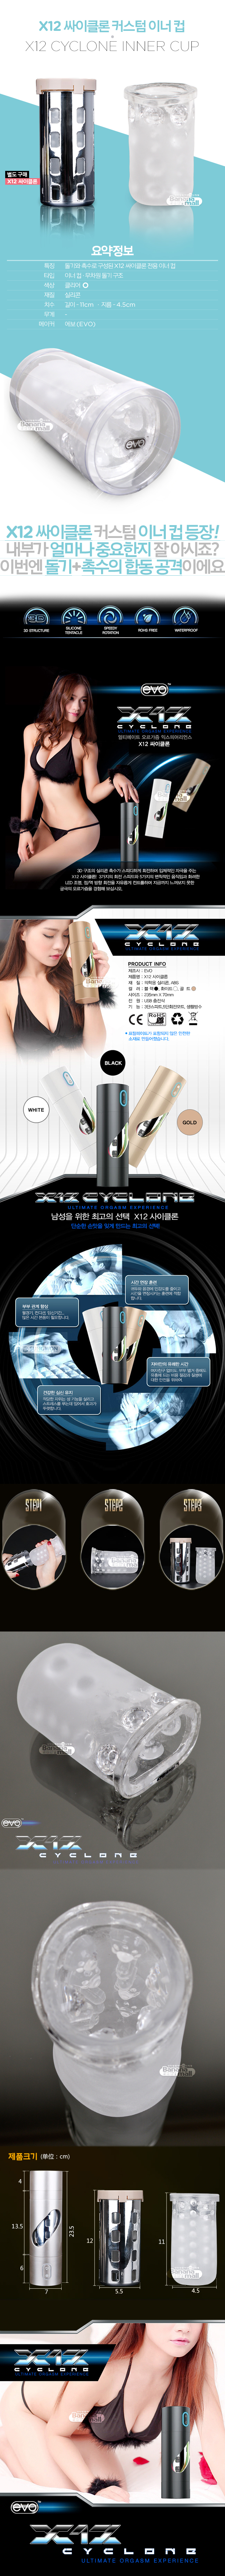 [커스텀 이너 컵] X12 싸이클론 커스텀 이너 컵(EVO X12 Cyclone Custom Inner Cup) - 에보(EVO-016-X12)